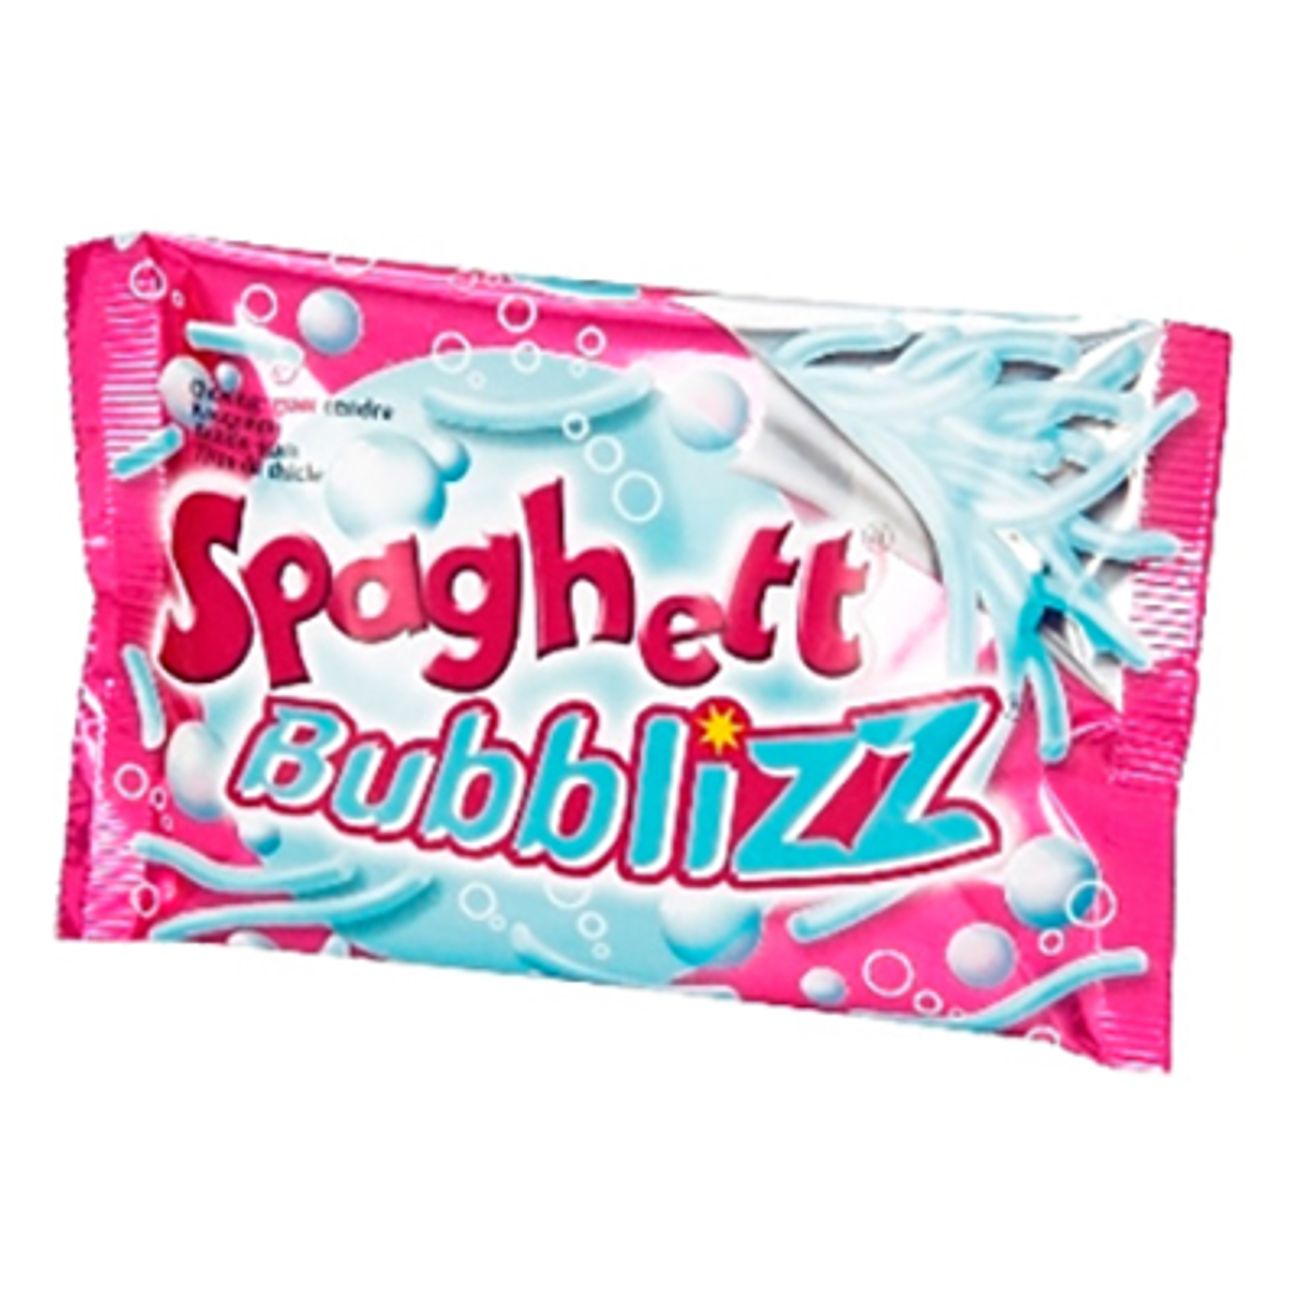 spaghetti-bubblizz-2